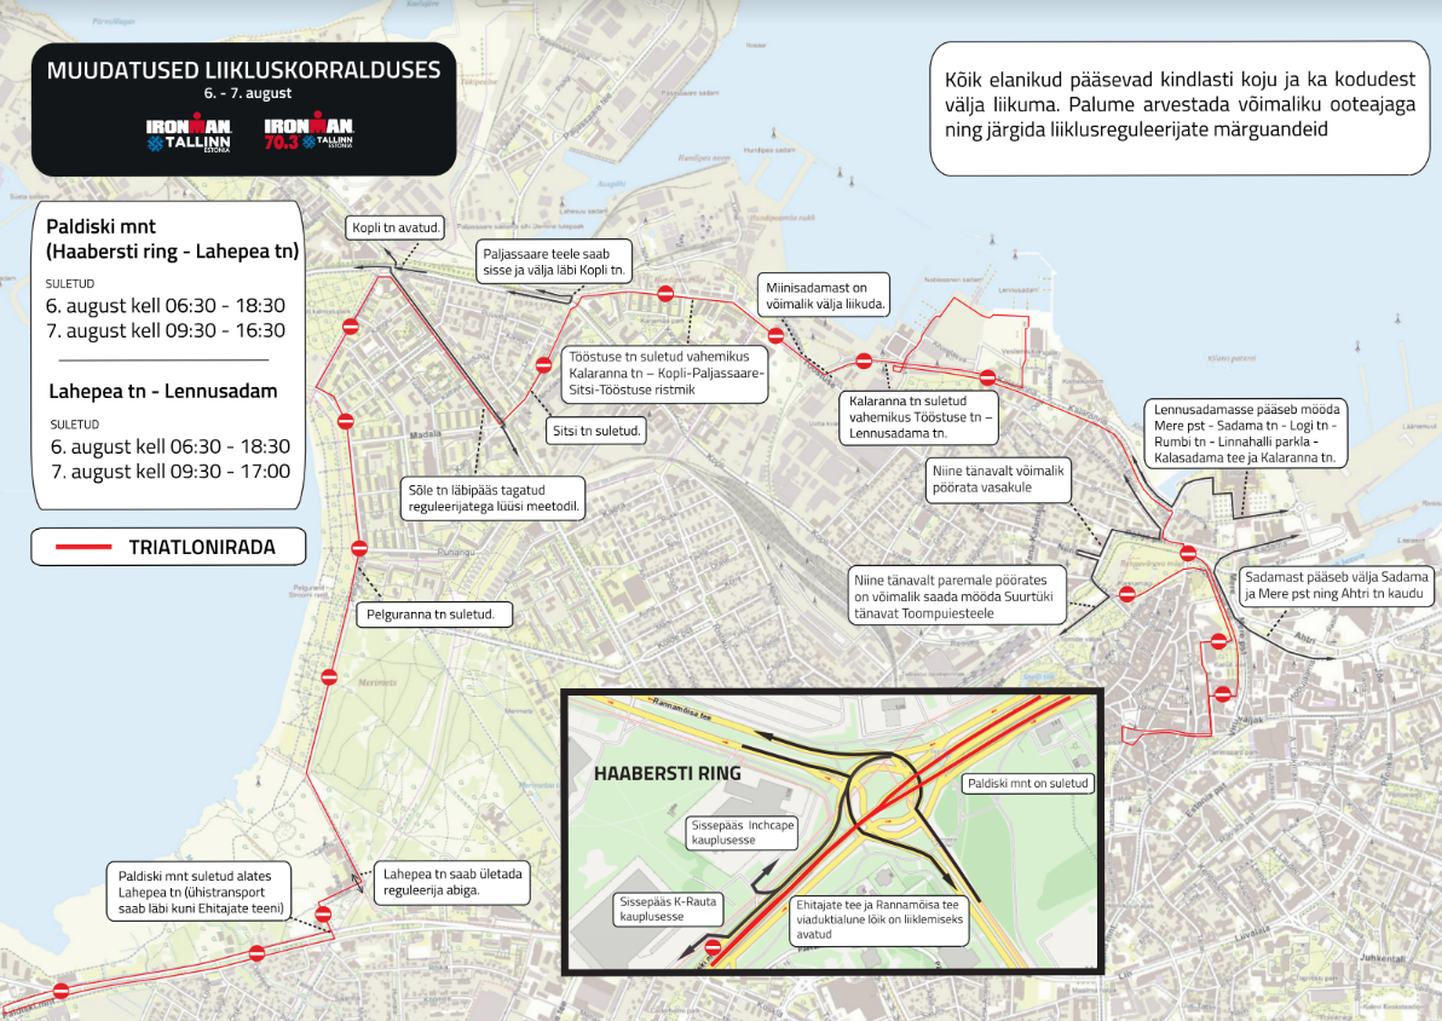 Перекрытые участки и схема движения на время проведения триатлона Ironman.